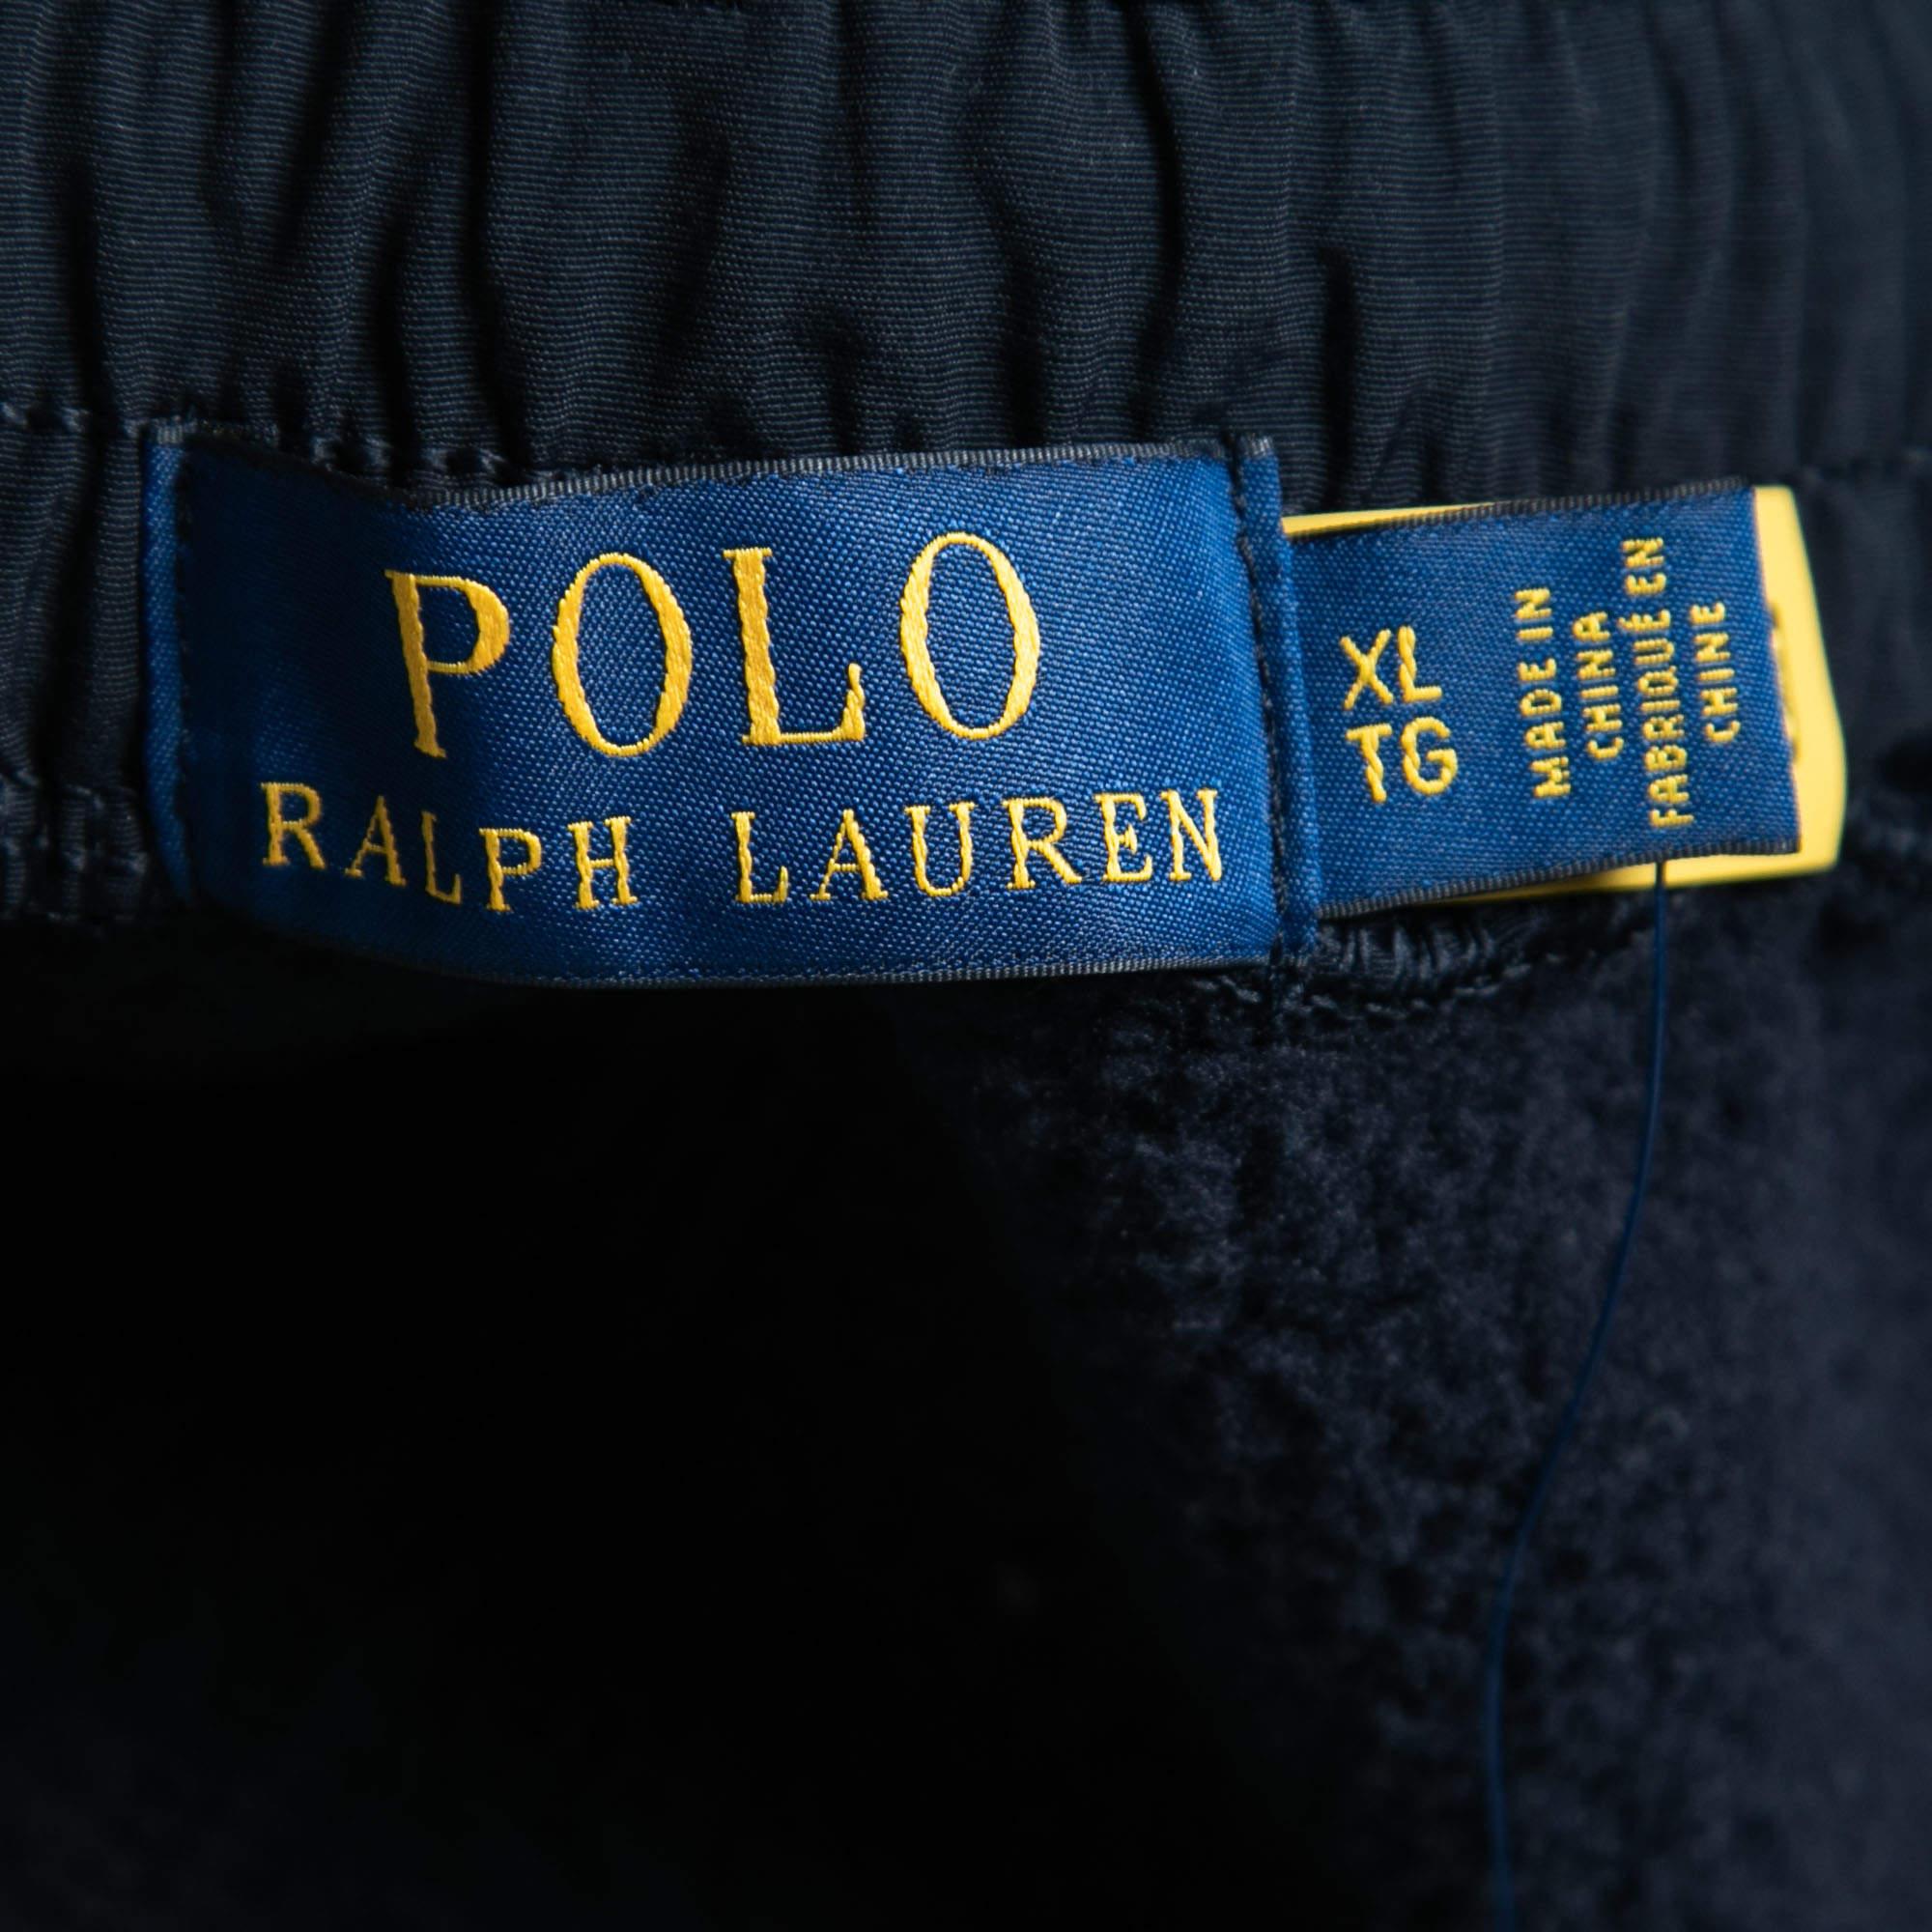 Polo Ralph Lauren Navy Blue Cotton Blend Aviatr Joggers XL In Excellent Condition For Sale In Dubai, Al Qouz 2